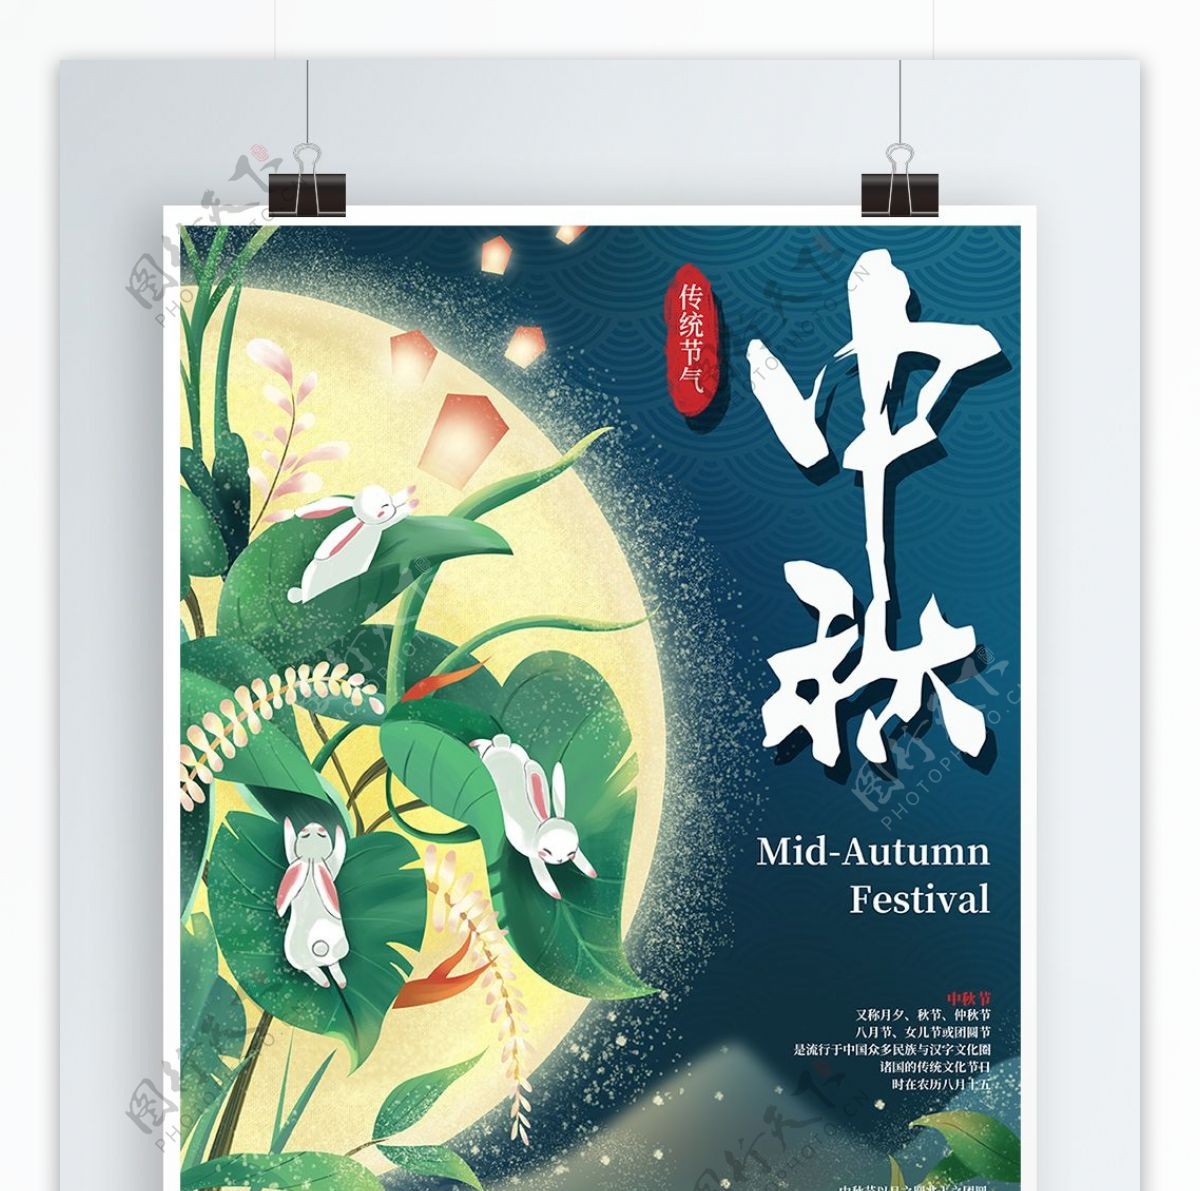 原创手绘中秋节节日宣传海报